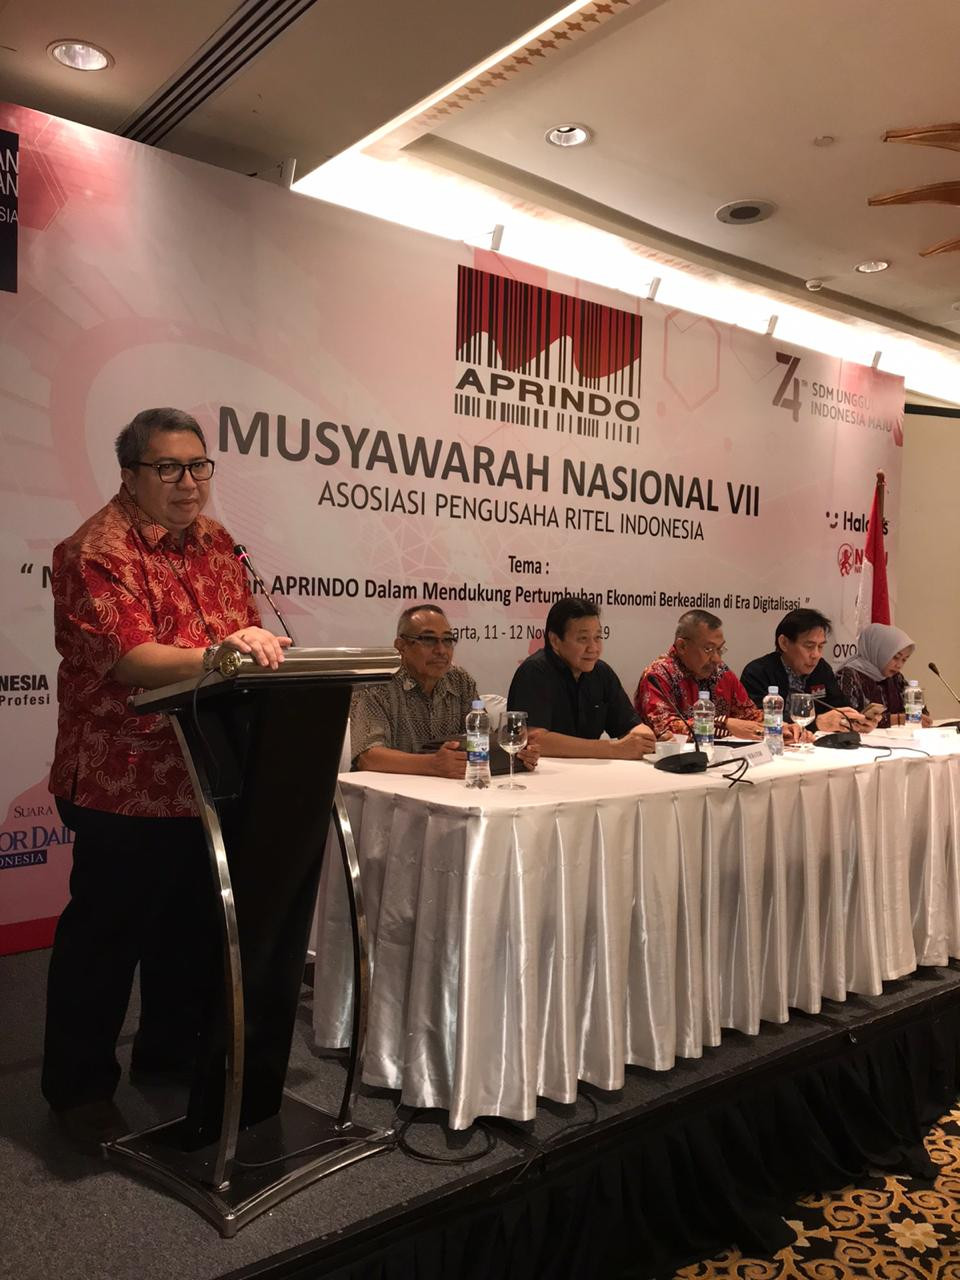 Roy Nicholas Mandey Terpilih Kembali Jadi Ketua Umum Aprindo 2019 - 2023 